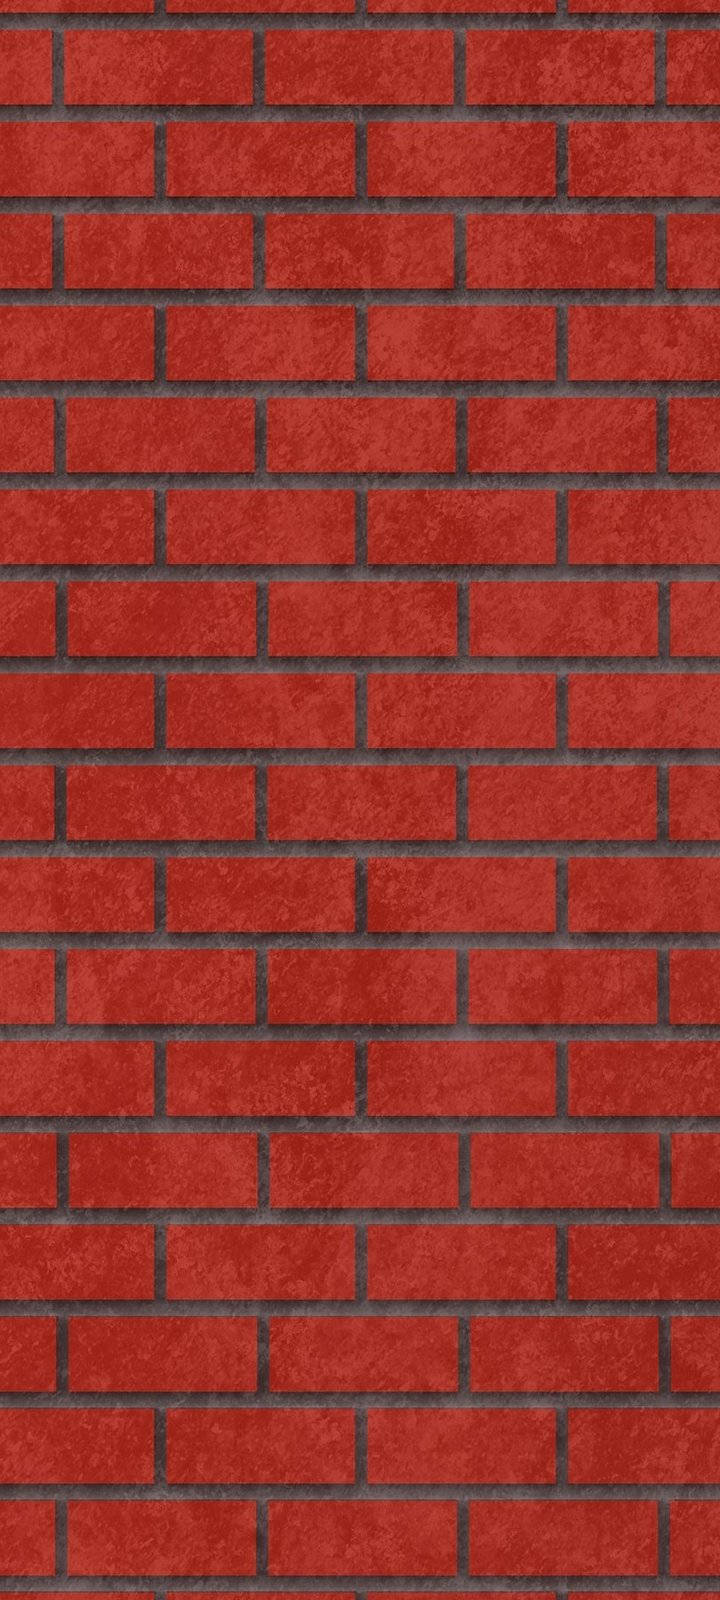 Vivo Y20 Red Brick Wall